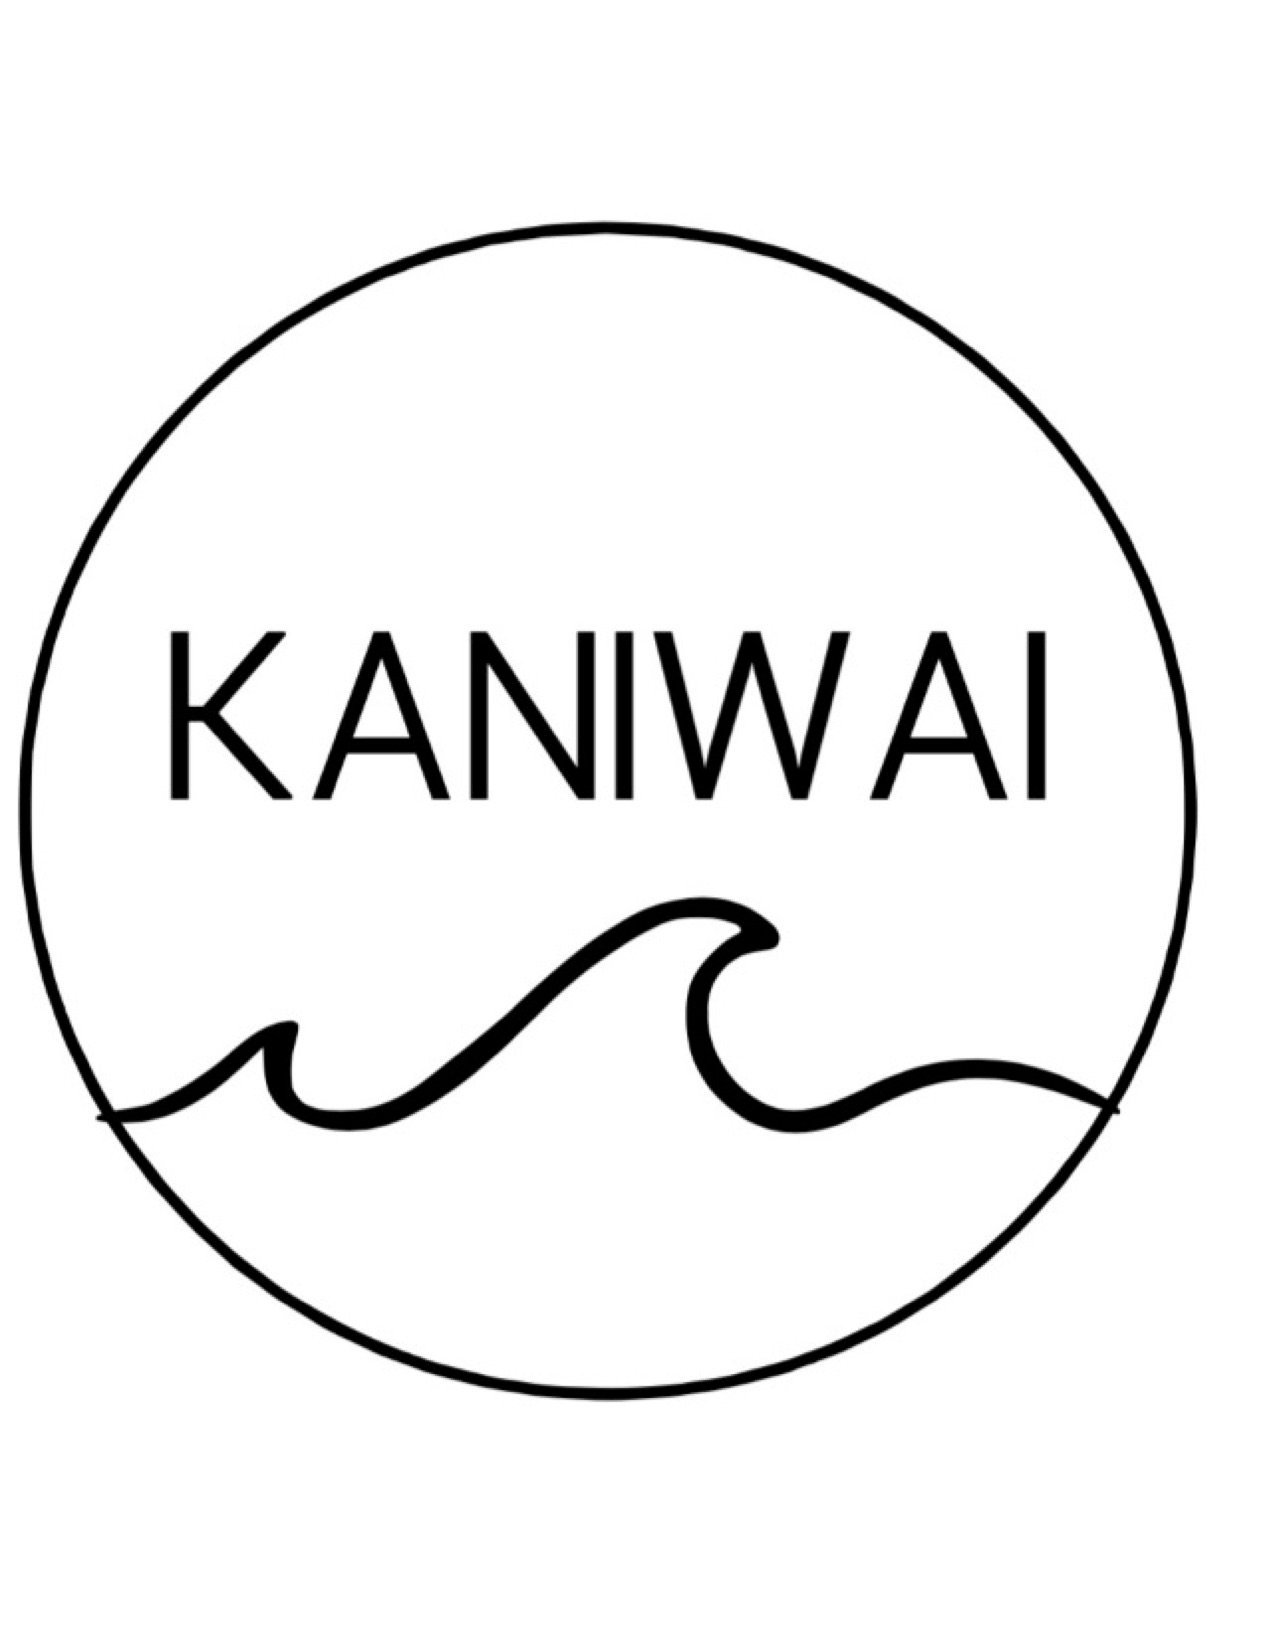 Kaniwai